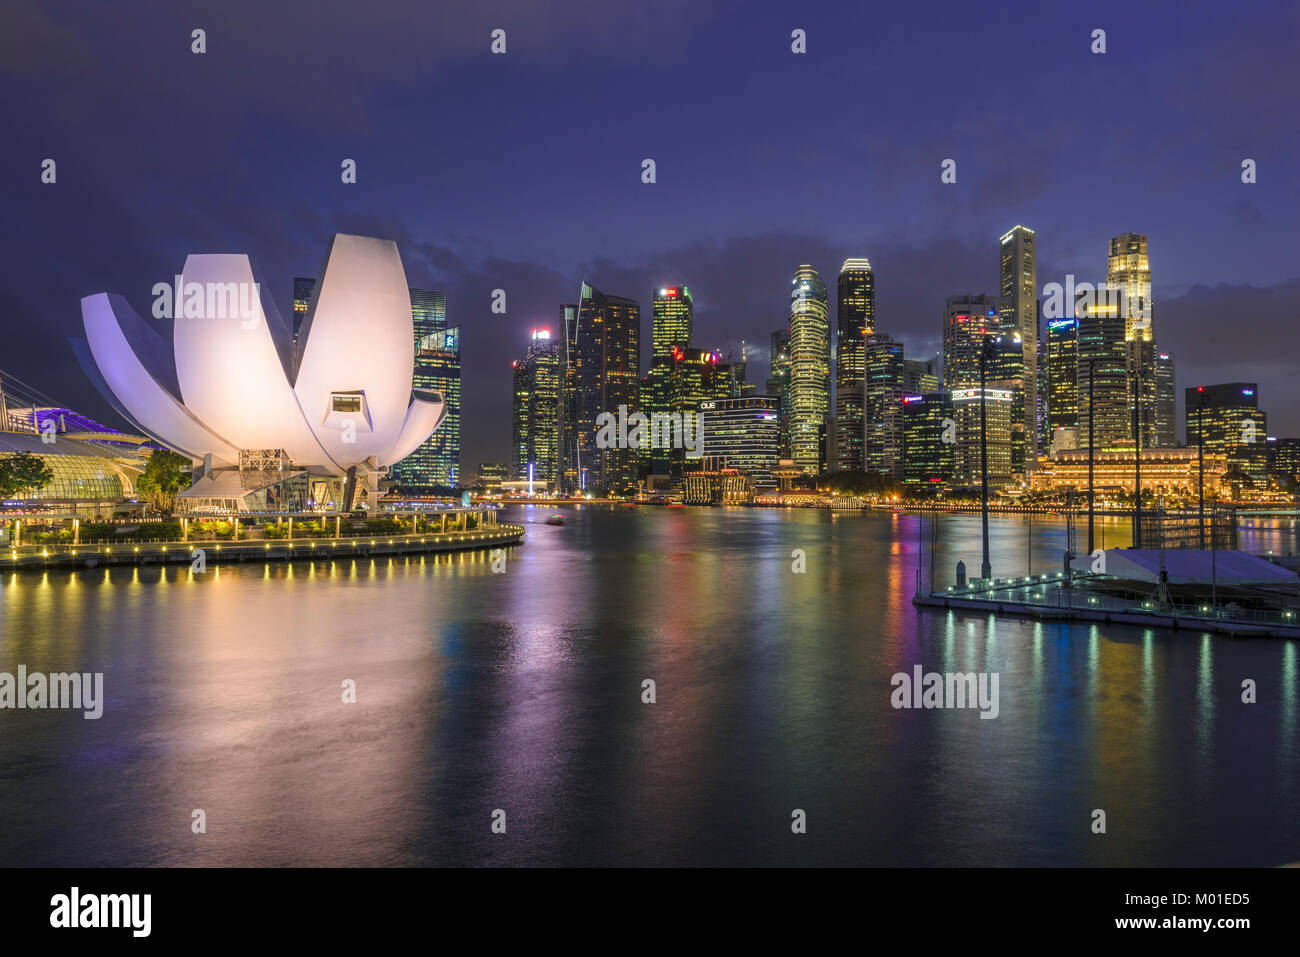 Marina Bay, Singapour. Coucher de soleil Vue du réservoir célèbre dans le sud-est de la ville d'Asie avec architecture iconique Banque D'Images